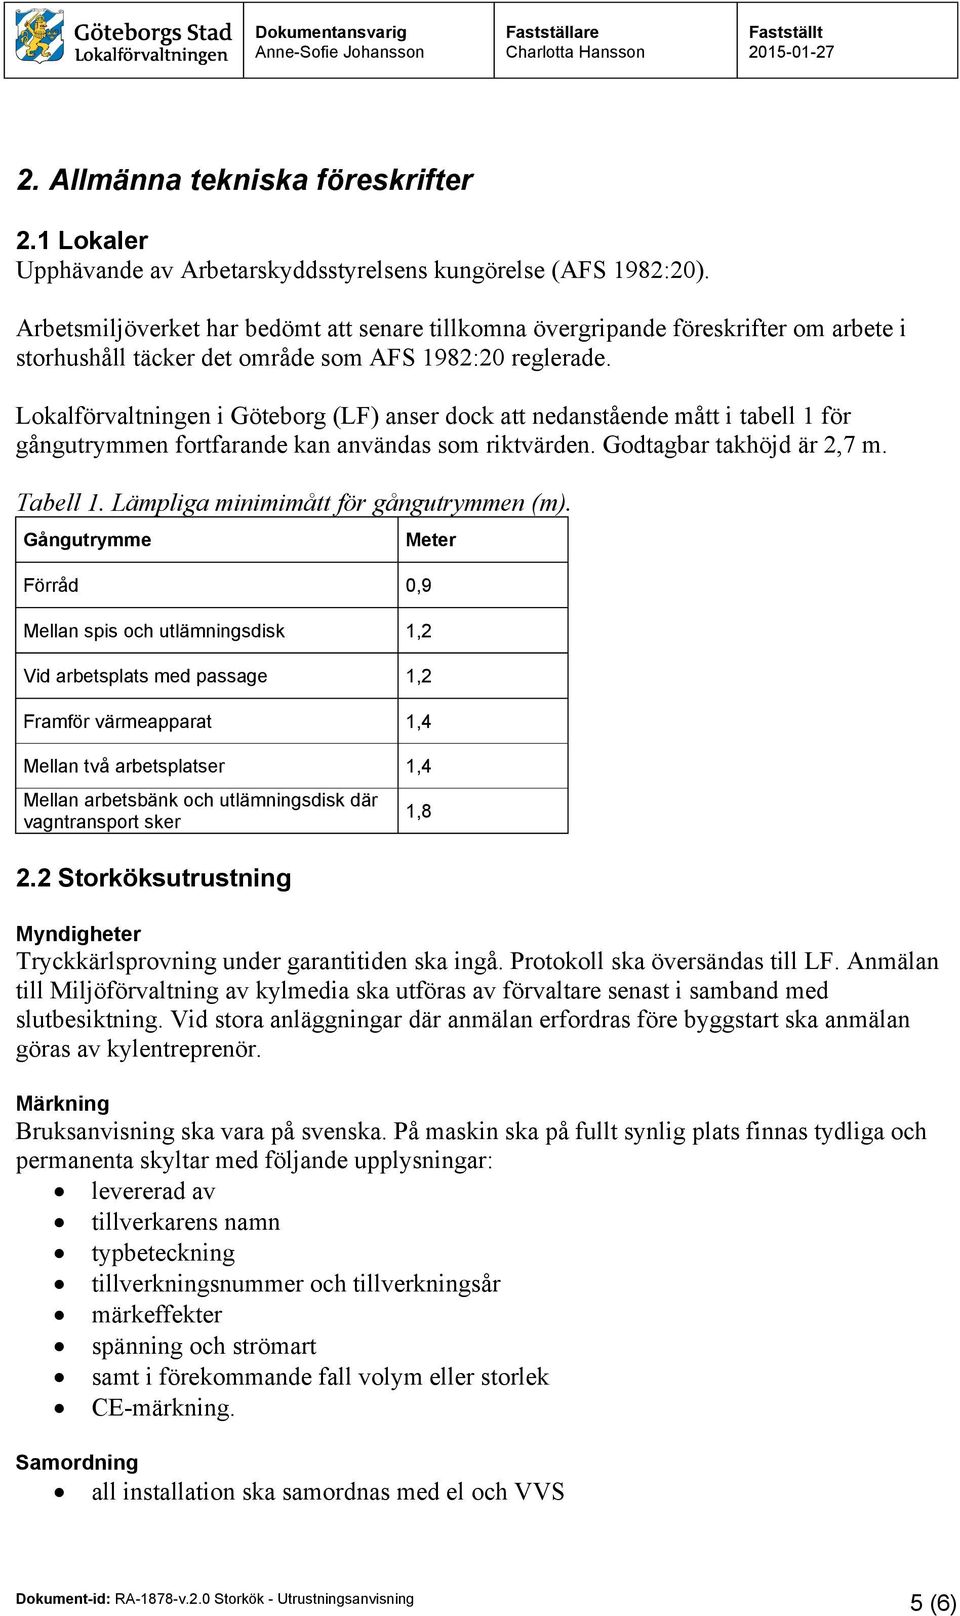 Lokalförvaltningen i Göteborg (LF) anser dock att nedanstående mått i tabell 1 för gångutrymmen fortfarande kan användas som riktvärden. Godtagbar takhöjd är 2,7 m. Tabell 1.